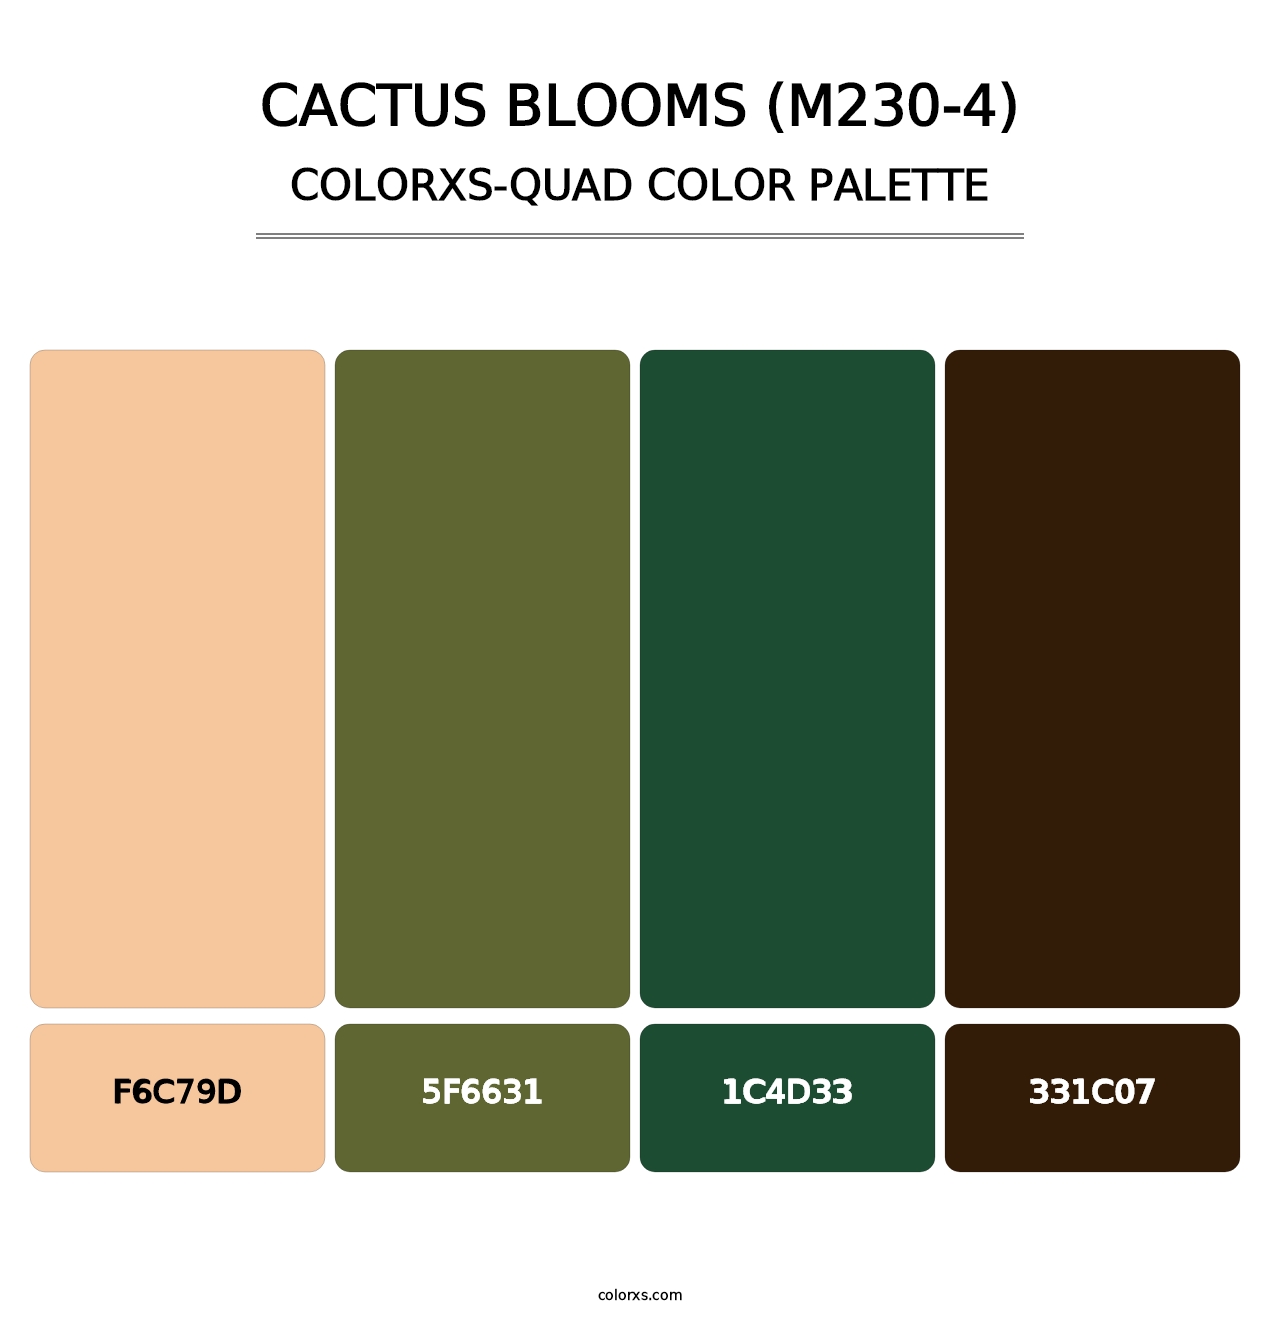 Cactus Blooms (M230-4) - Colorxs Quad Palette